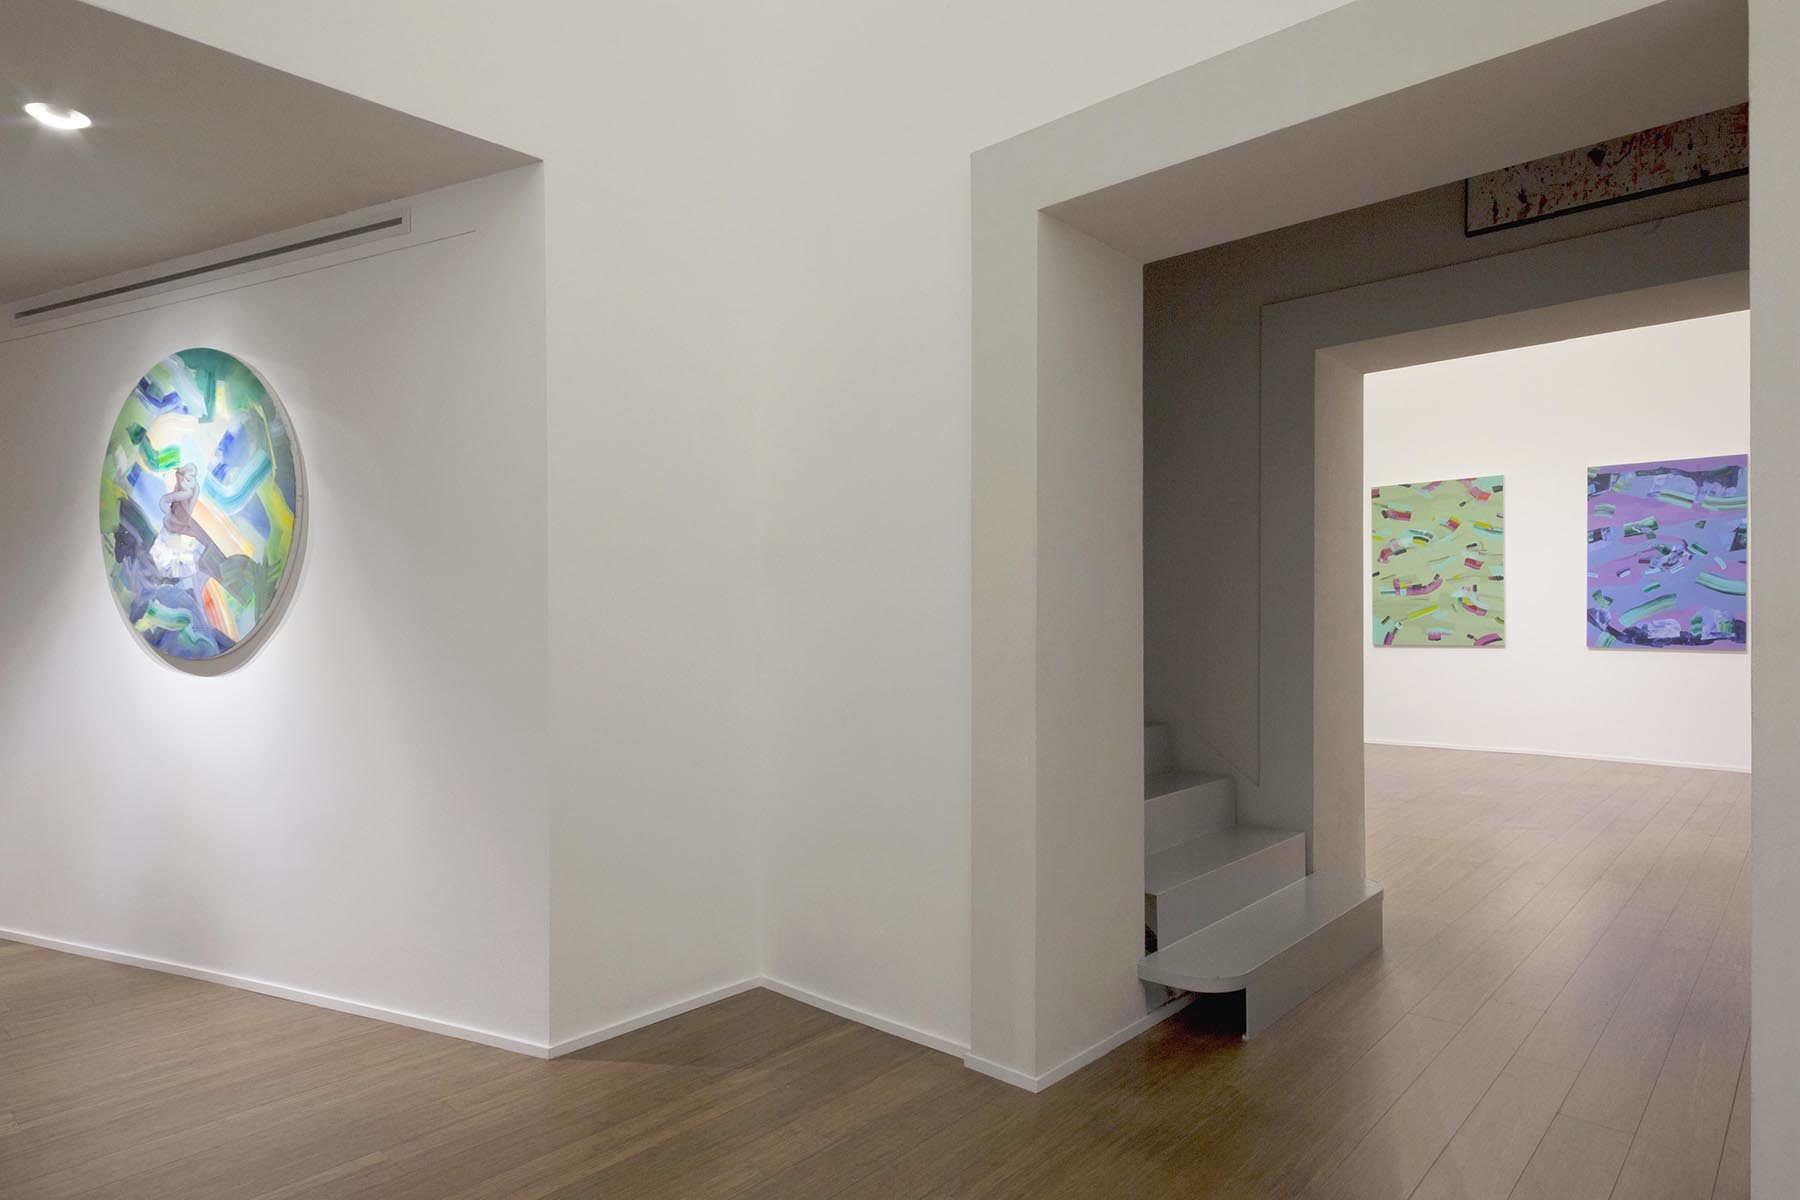 Isabella Nazzarri, Clinamen, 2017, installation view, ABC-Arte, Genoa